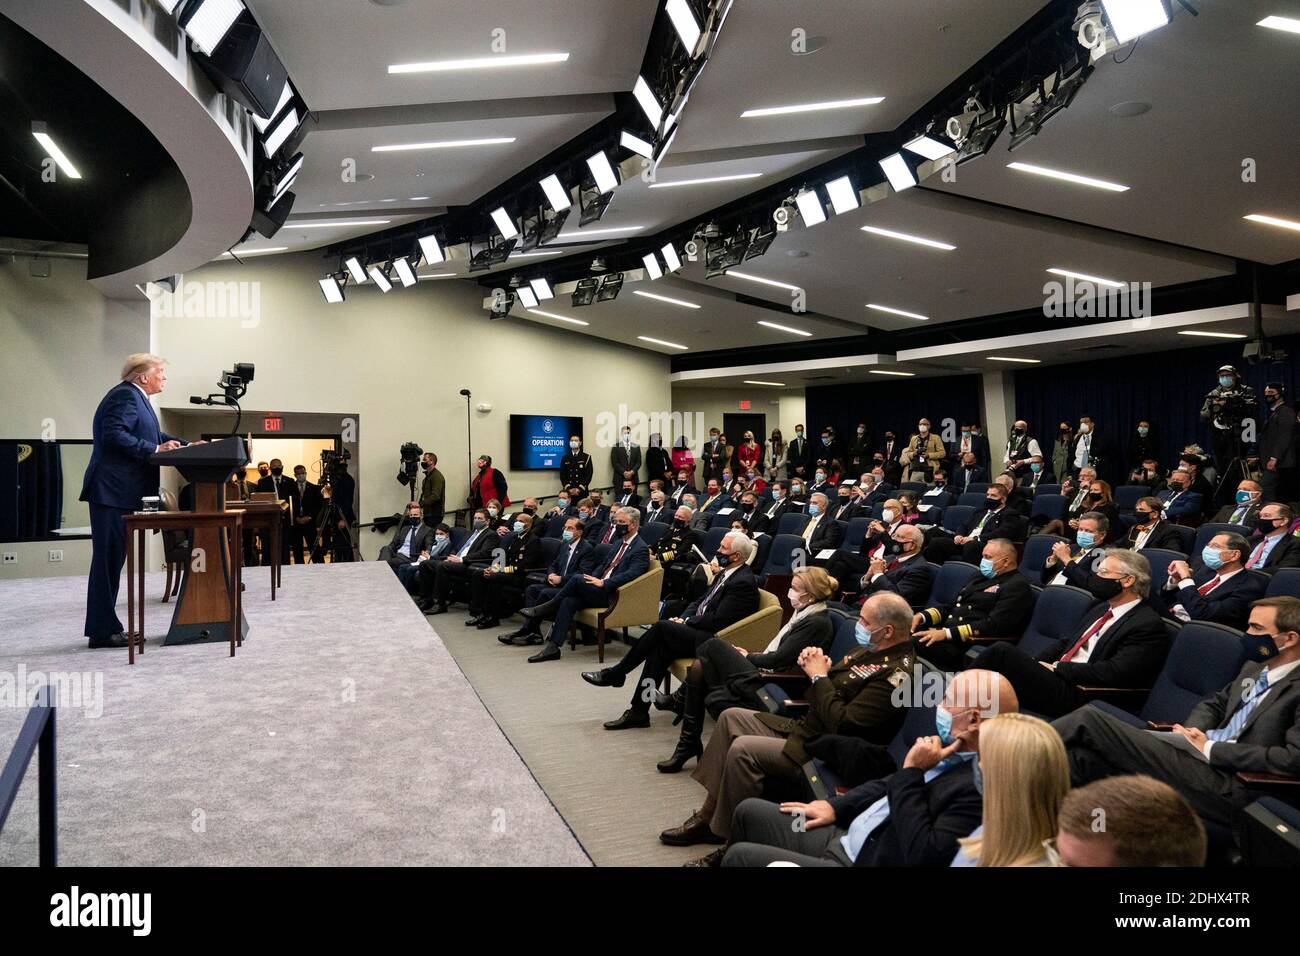 El presidente de Estados Unidos, Donald Trump, pronuncia un discurso en la Cumbre de la vacuna Operation Warp Speed en el Auditorio del Tribunal del Sur en el edificio de la Oficina Ejecutiva de Eisenhower en la Casa Blanca 8, 2020 en Washington, D.C. Foto de stock